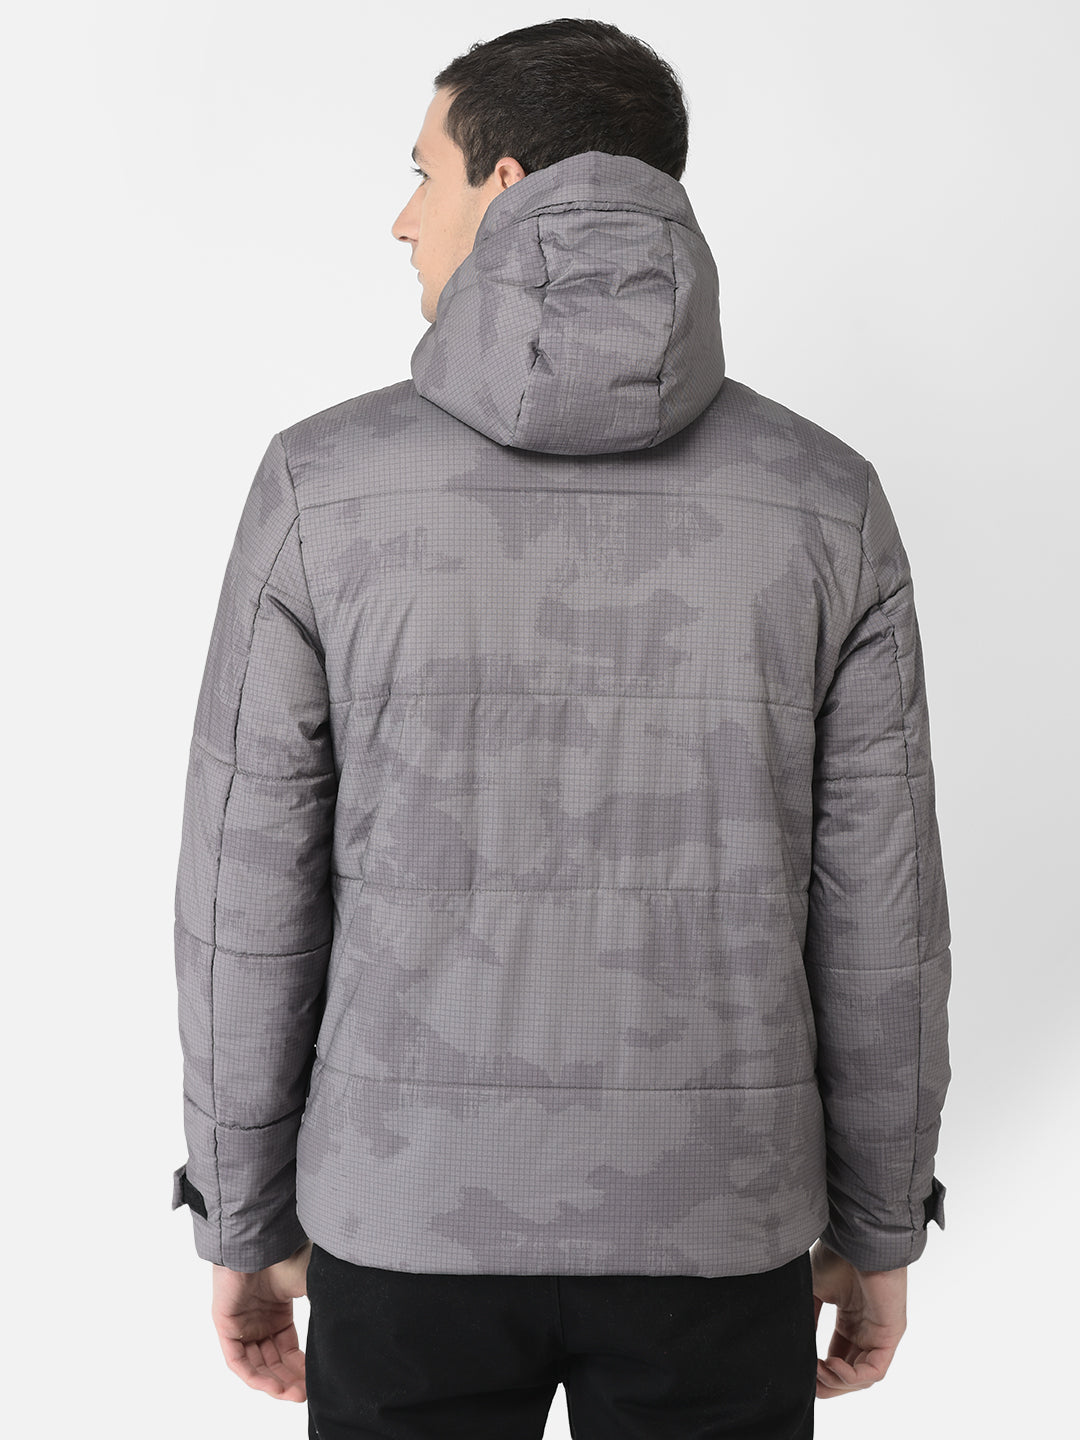  Grey Camouflage Padded Jacket 